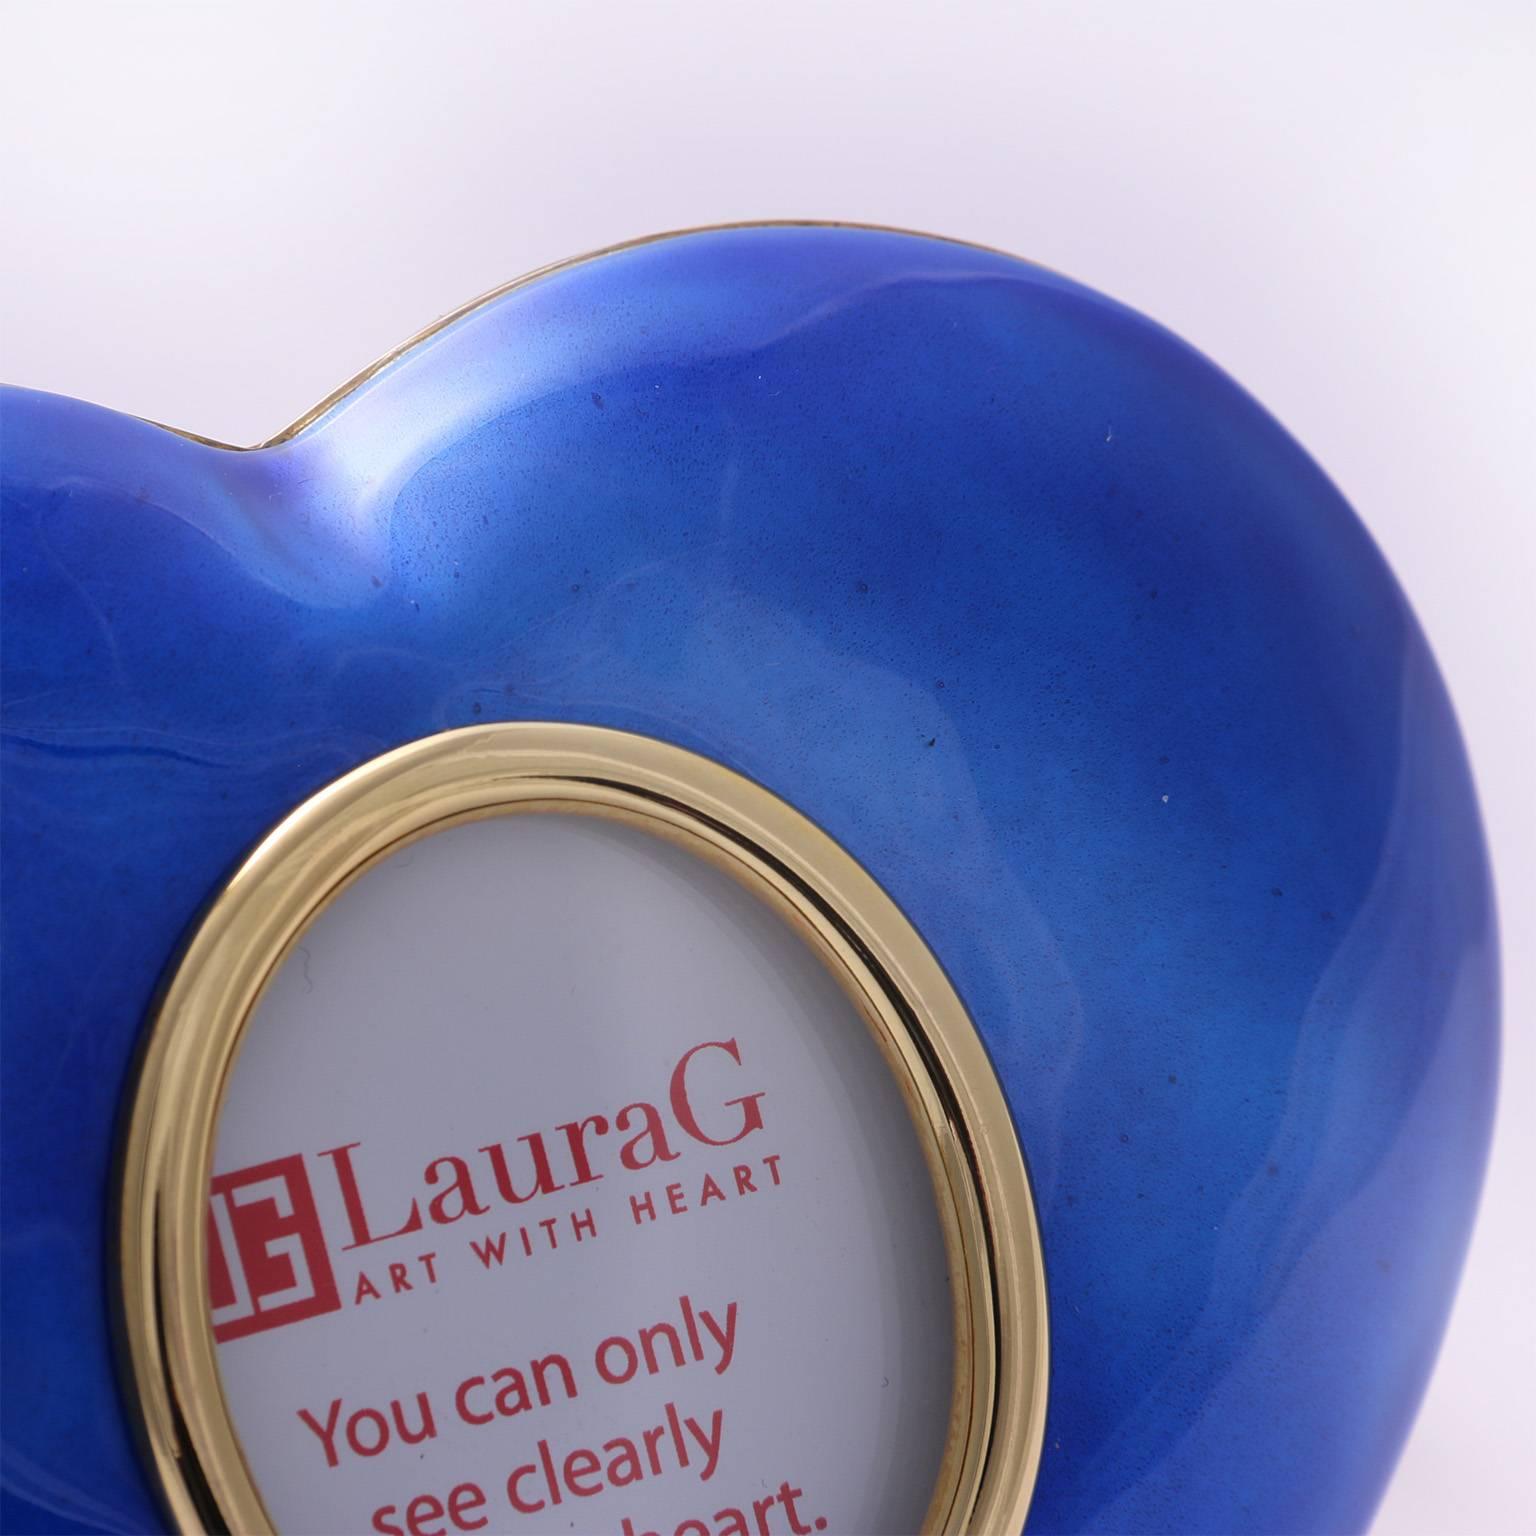 Laura G  Heart Blue ist ein kleiner vergoldeter Fotorahmen  vollständig handgefertigt, ein perfektes Geschenk für jeden Anlass. Jeder von uns möchte seine Liebe in einem Geschenk ausdrücken oder seine eigenen kostbaren Erinnerungen an die Liebe in